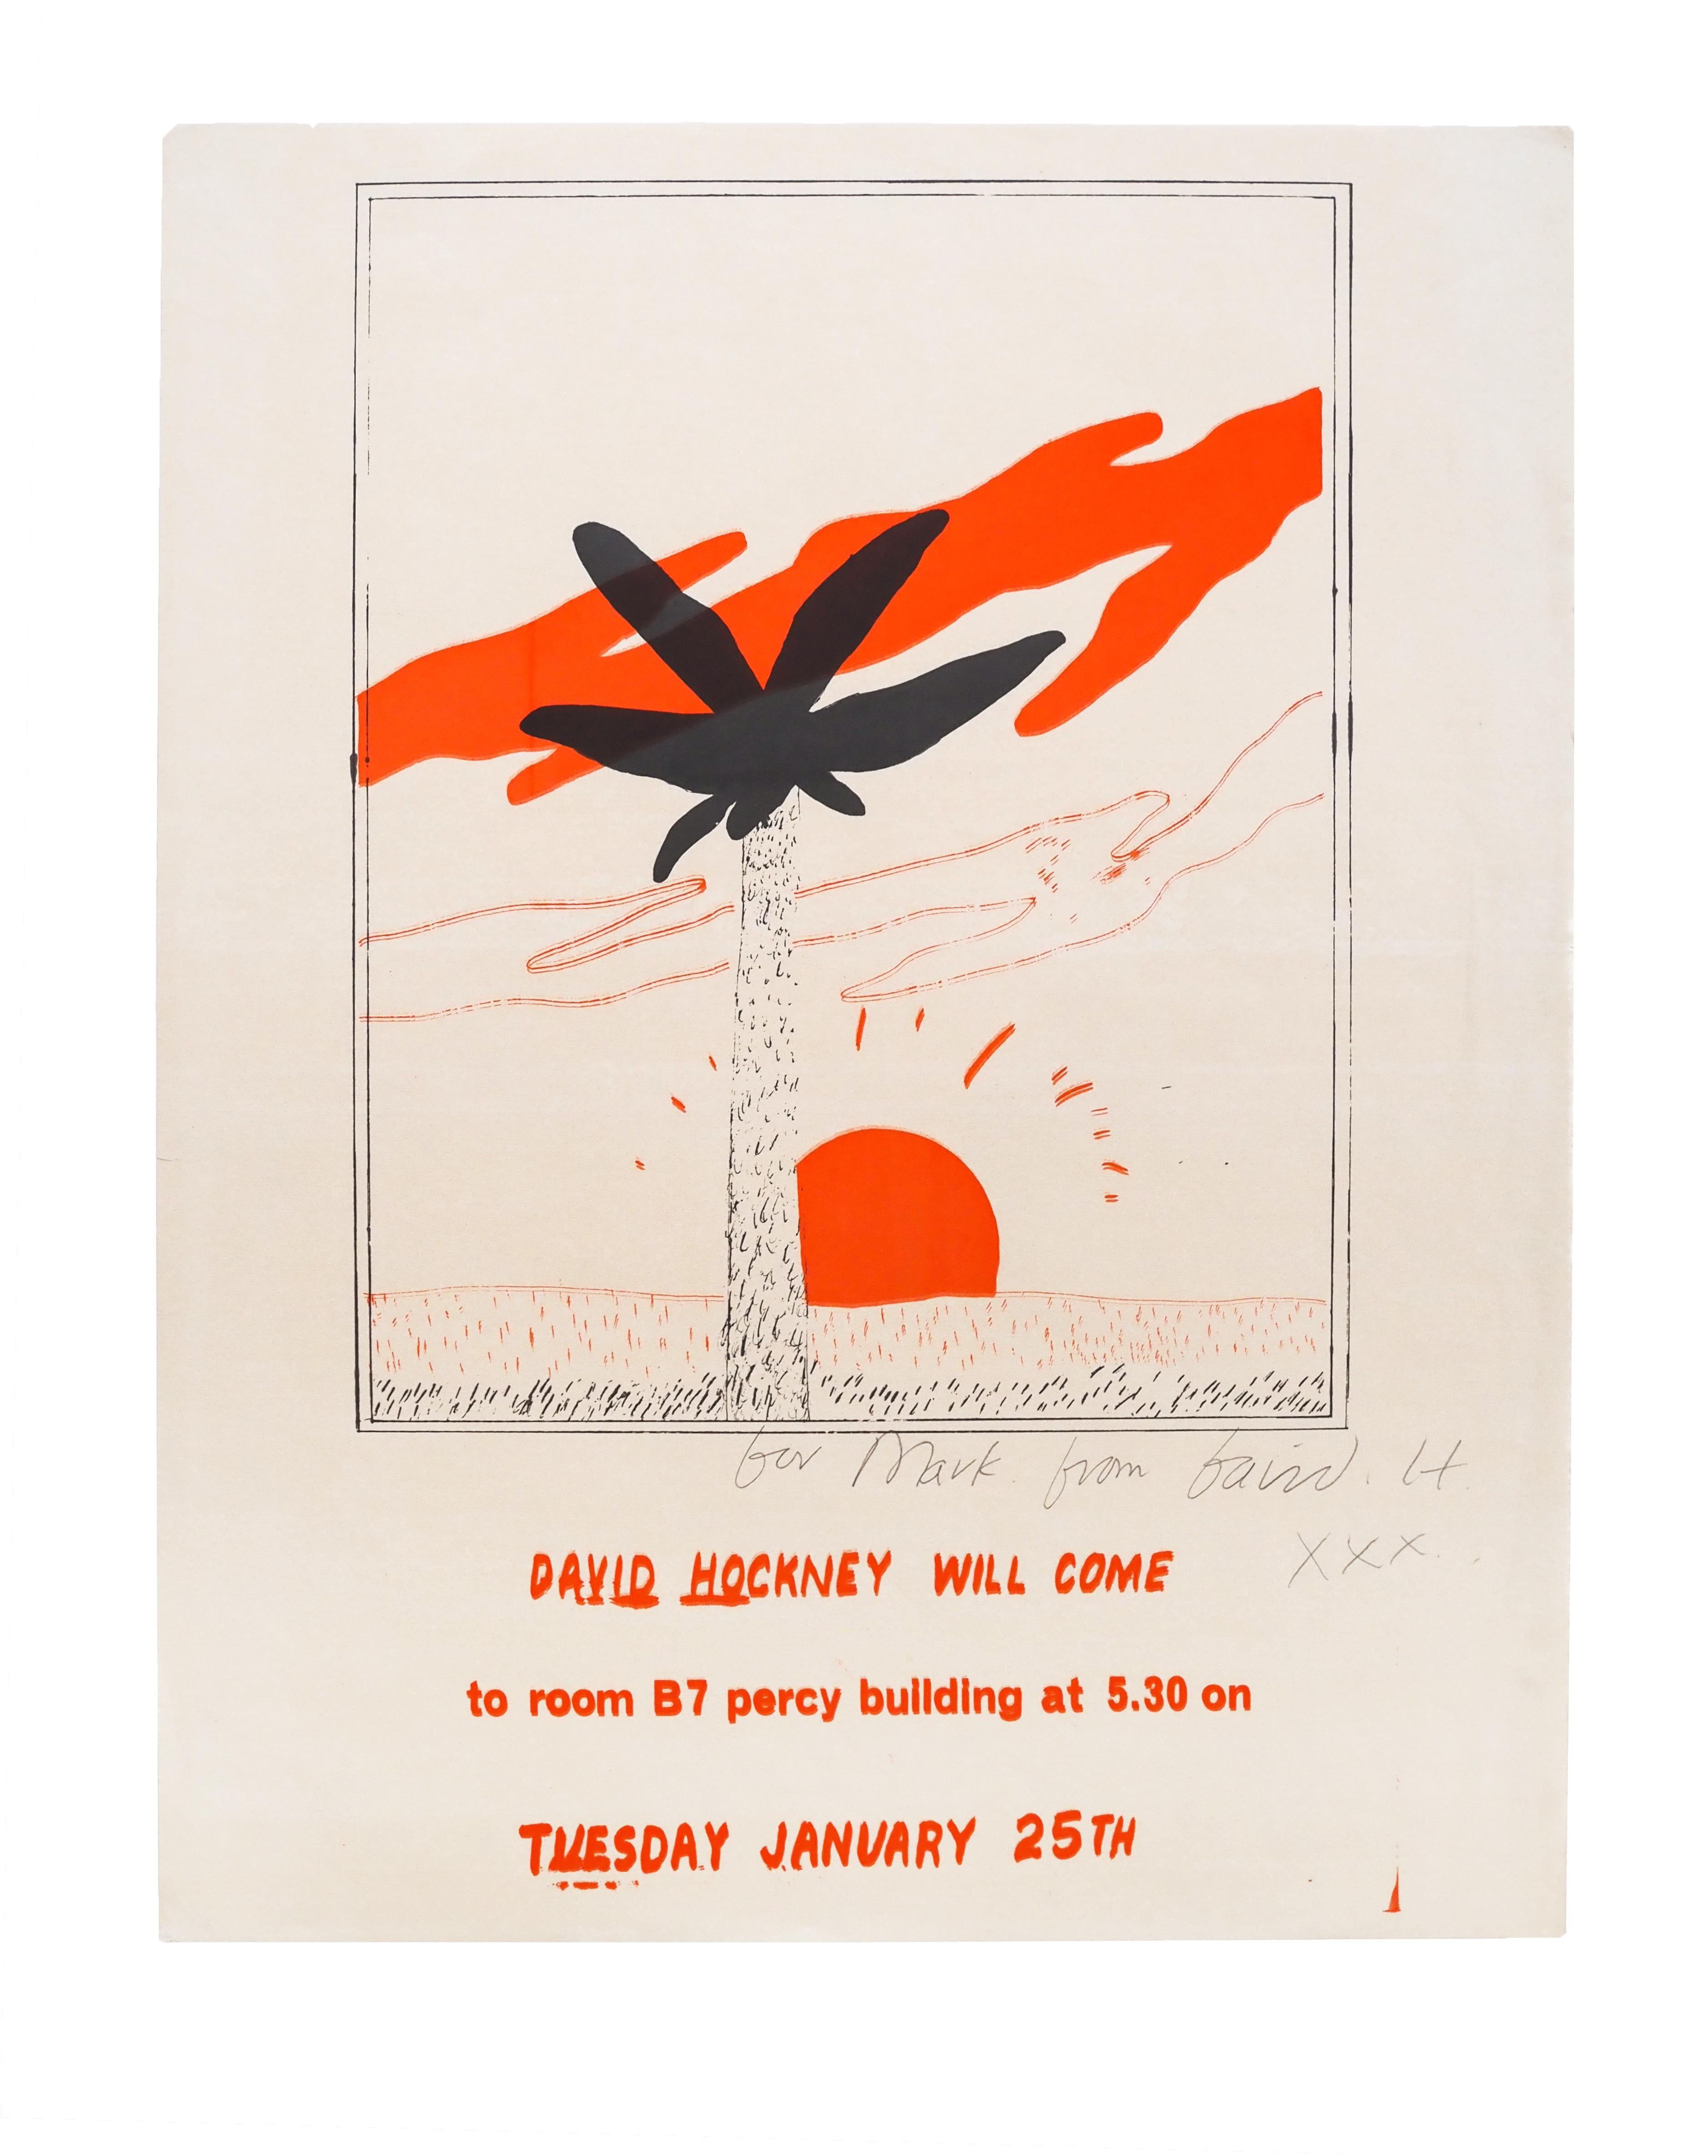 Diese einzigartige und beeindruckende Sammlung von Originalzeichnungen, Siebdrucken und Plakaten von David Hockney umfasst Arbeiten, die zur Förderung eines Vortrags entstanden, den Hockney 1965 im Percy-Gebäude der Newcastle University hielt.
In